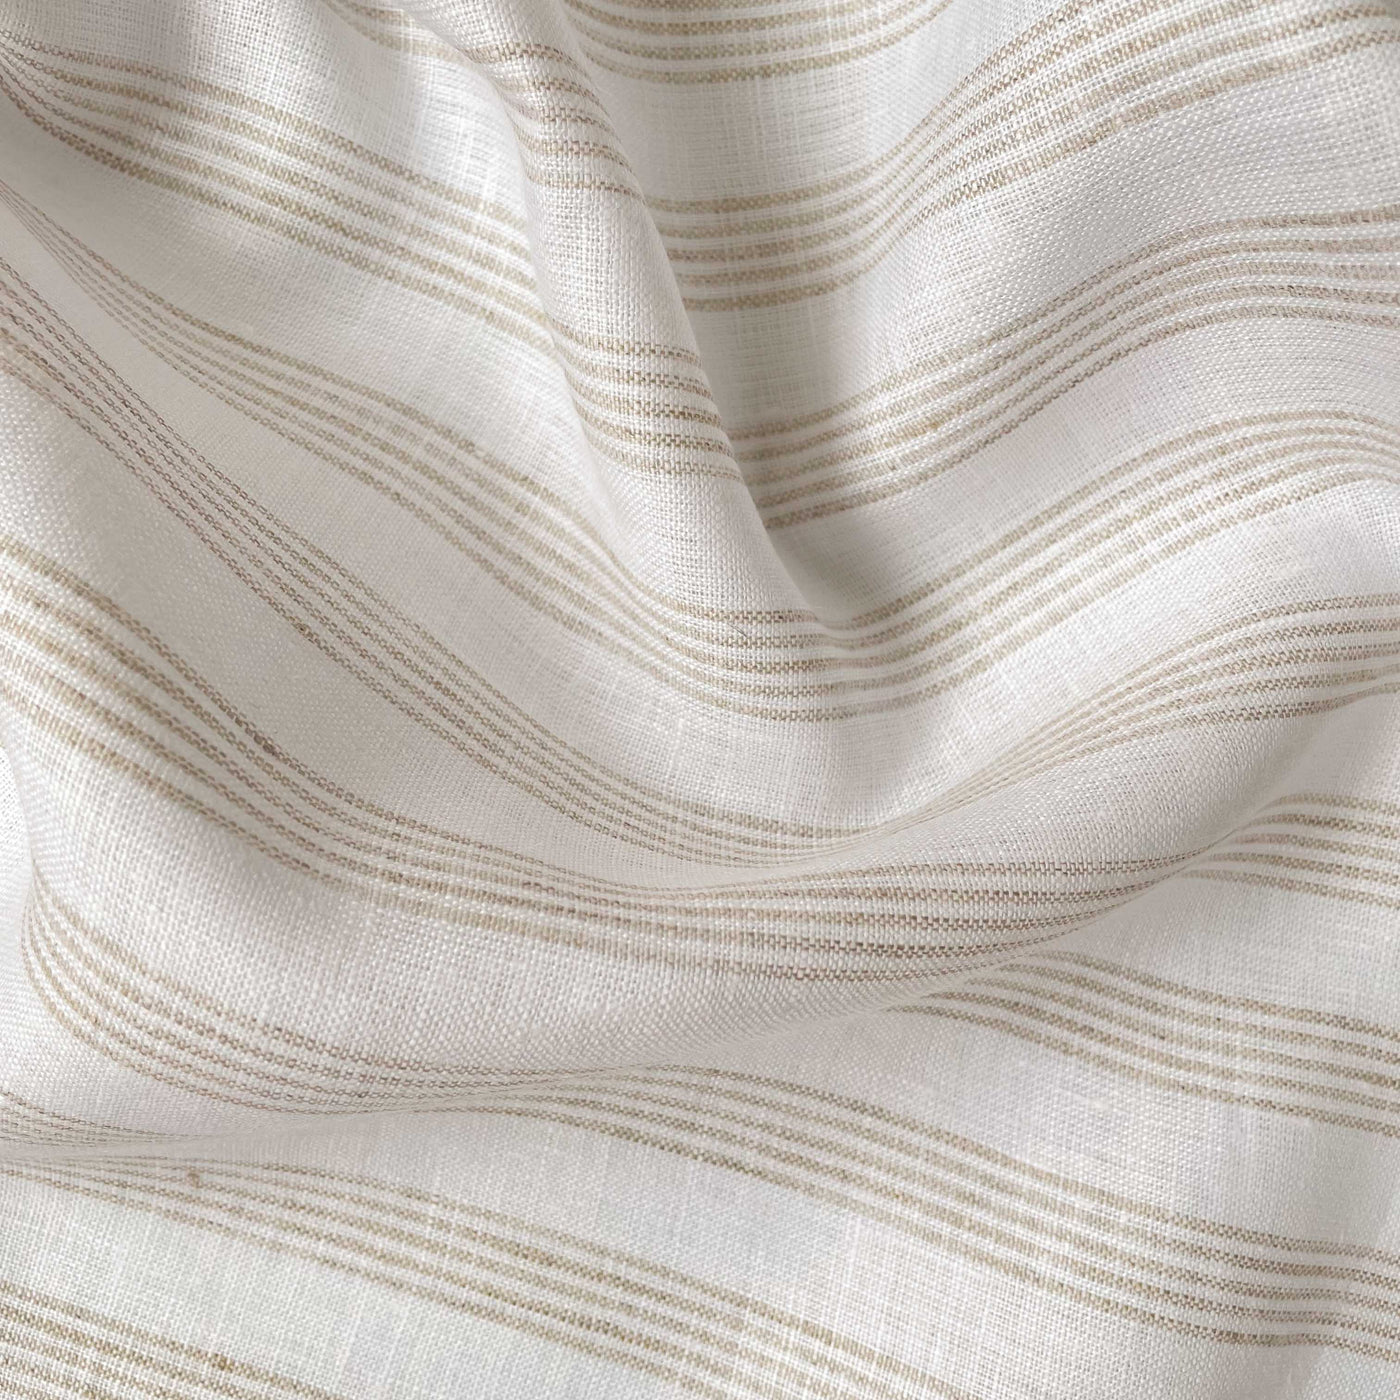 Premium Linen Fabric Fabric Tuscan Beige & White Multi-Striped Premium 60 Lea Pure Linen Fabric (Width 58 Inches)